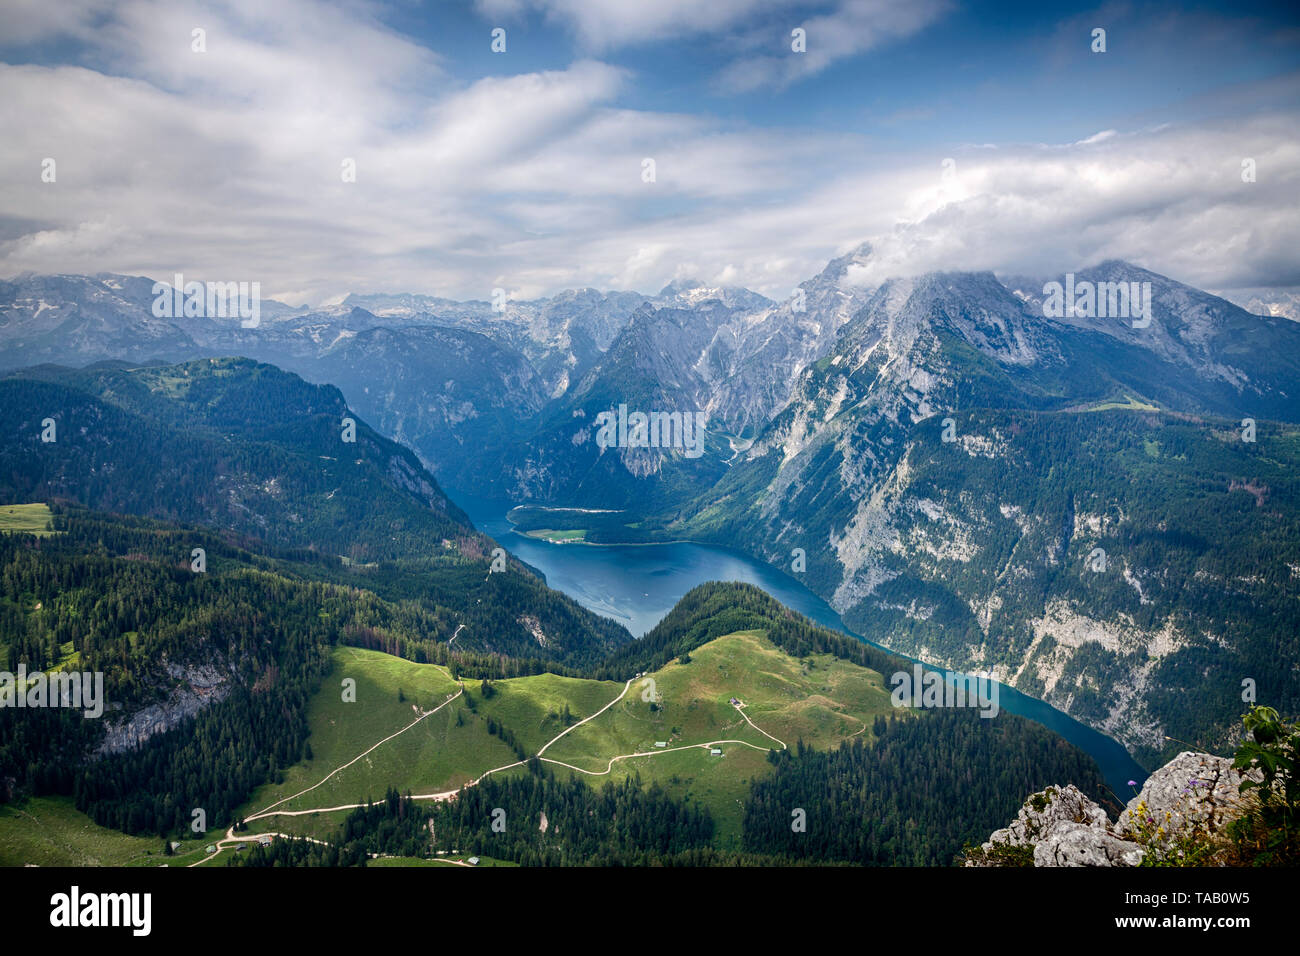 El lago Königsee y montañas circundantes, visto desde la cima de la montaña Jenner, justo al sur de Berchtesgaden, Baviera, Alemania Foto de stock